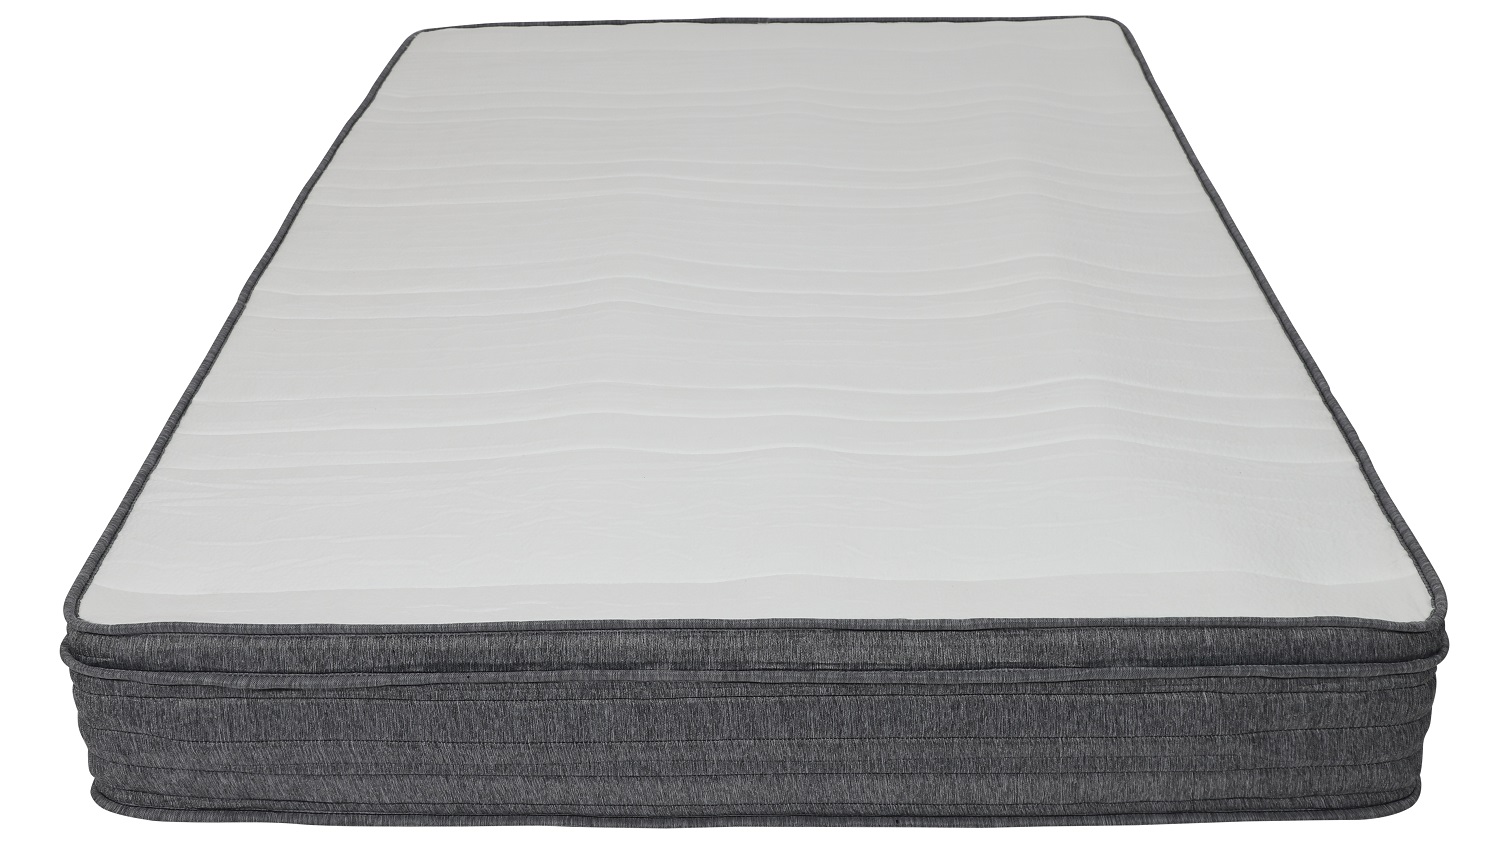 hybrid mattress 14 inches